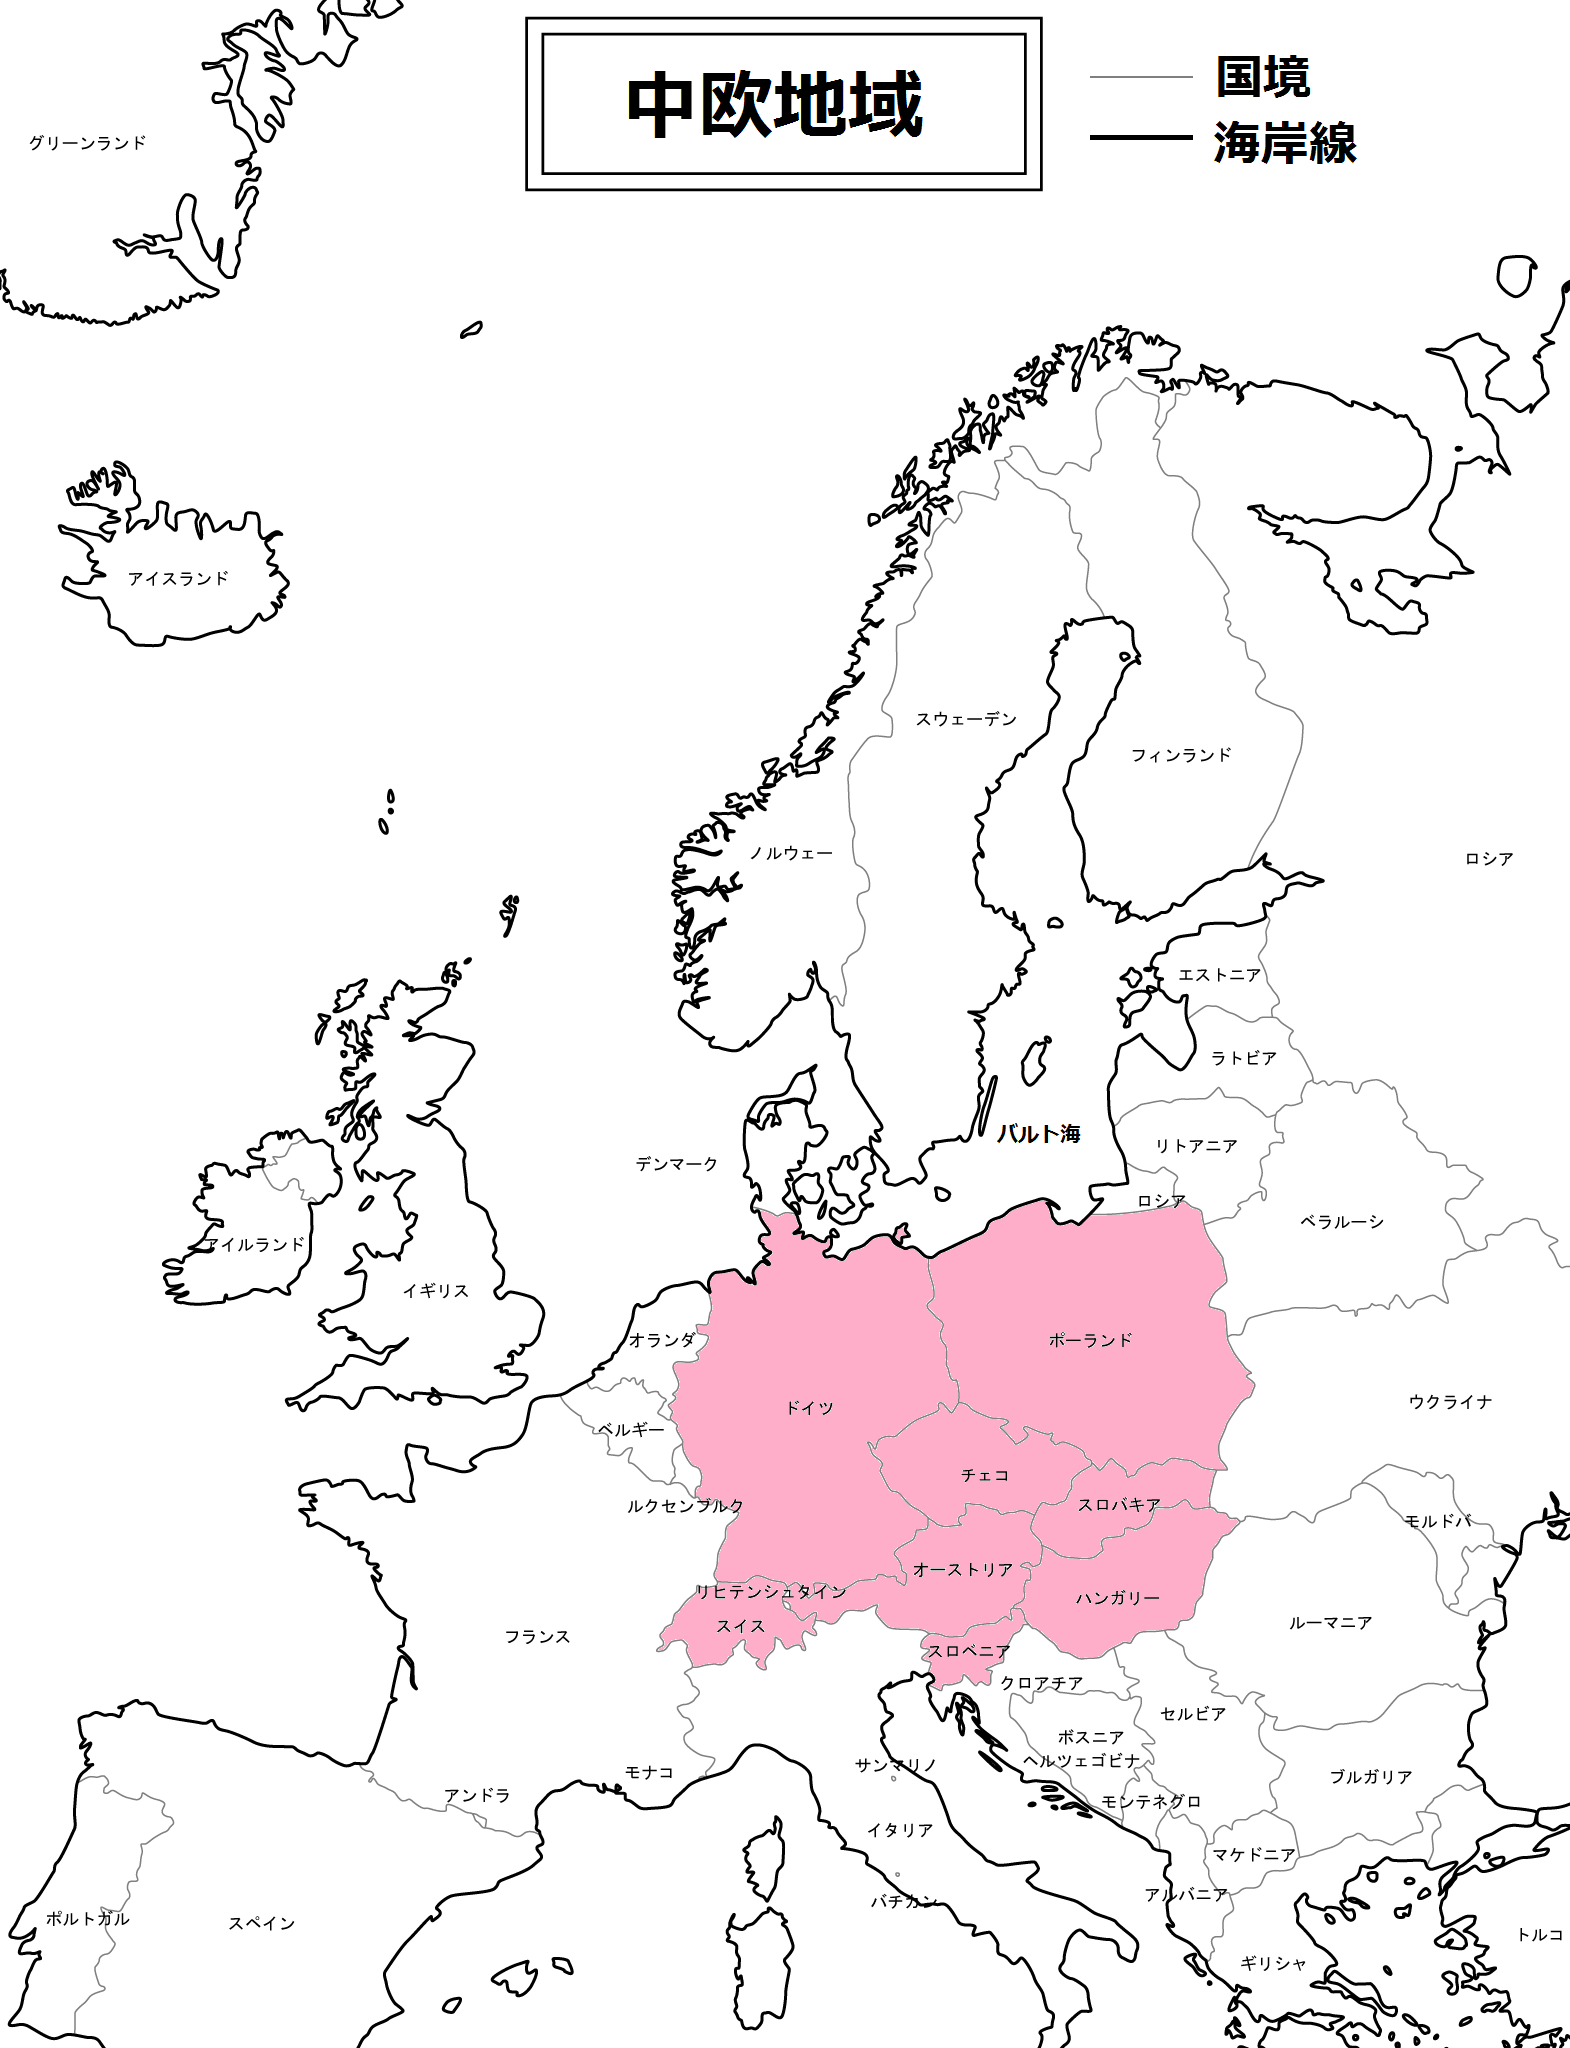 中央ヨーロッパとはどこか〜中欧諸国の特徴・共通点〜